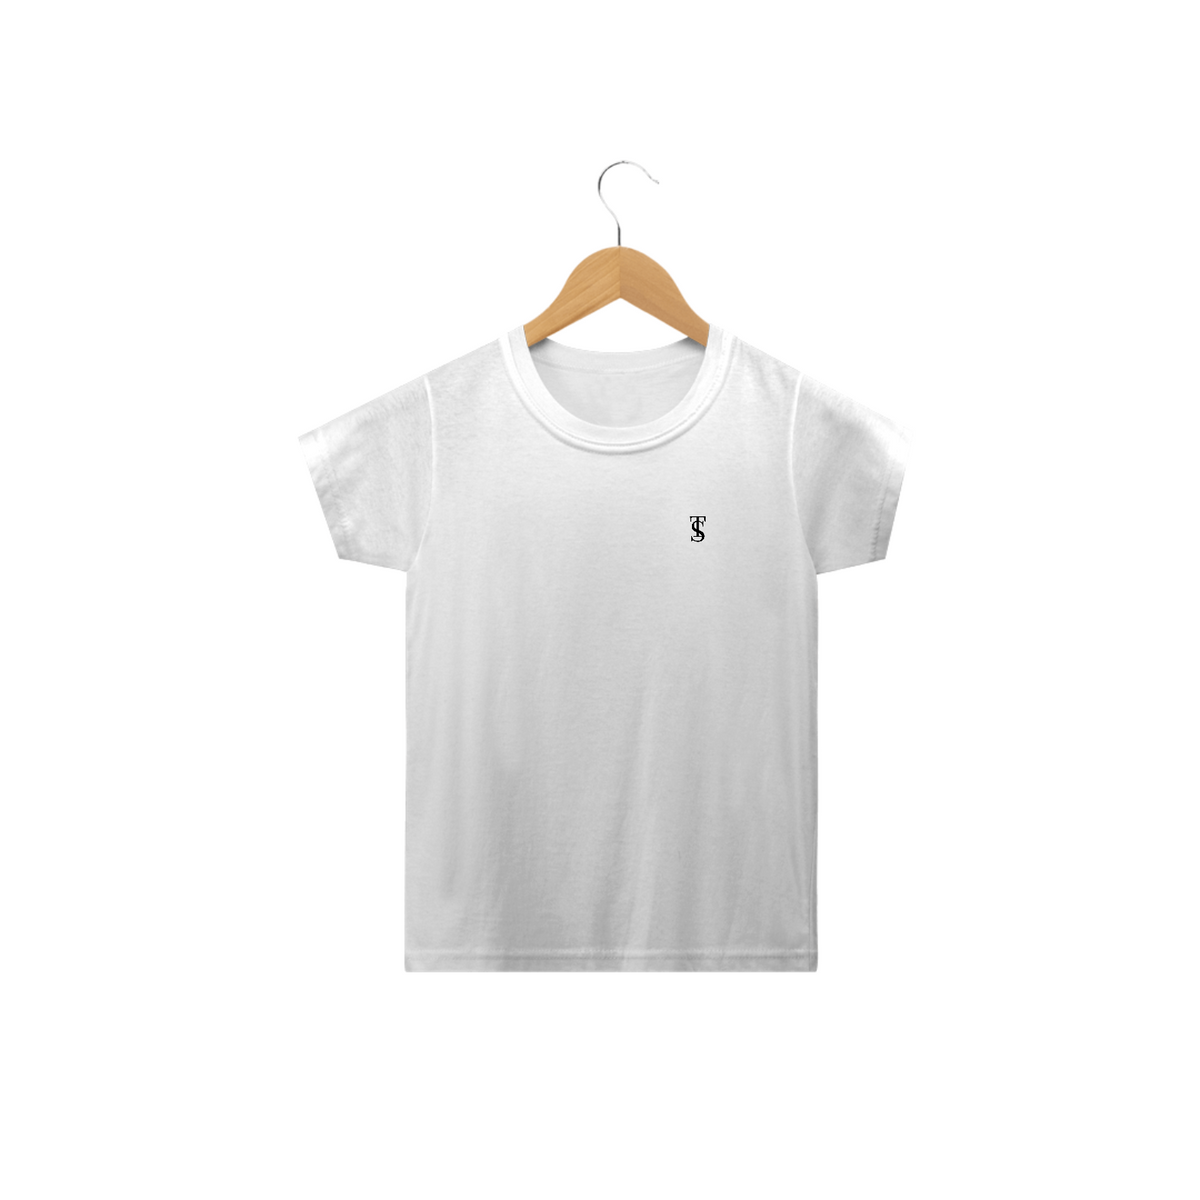 Nome do produto: Camiseta Básica Infantil Branca